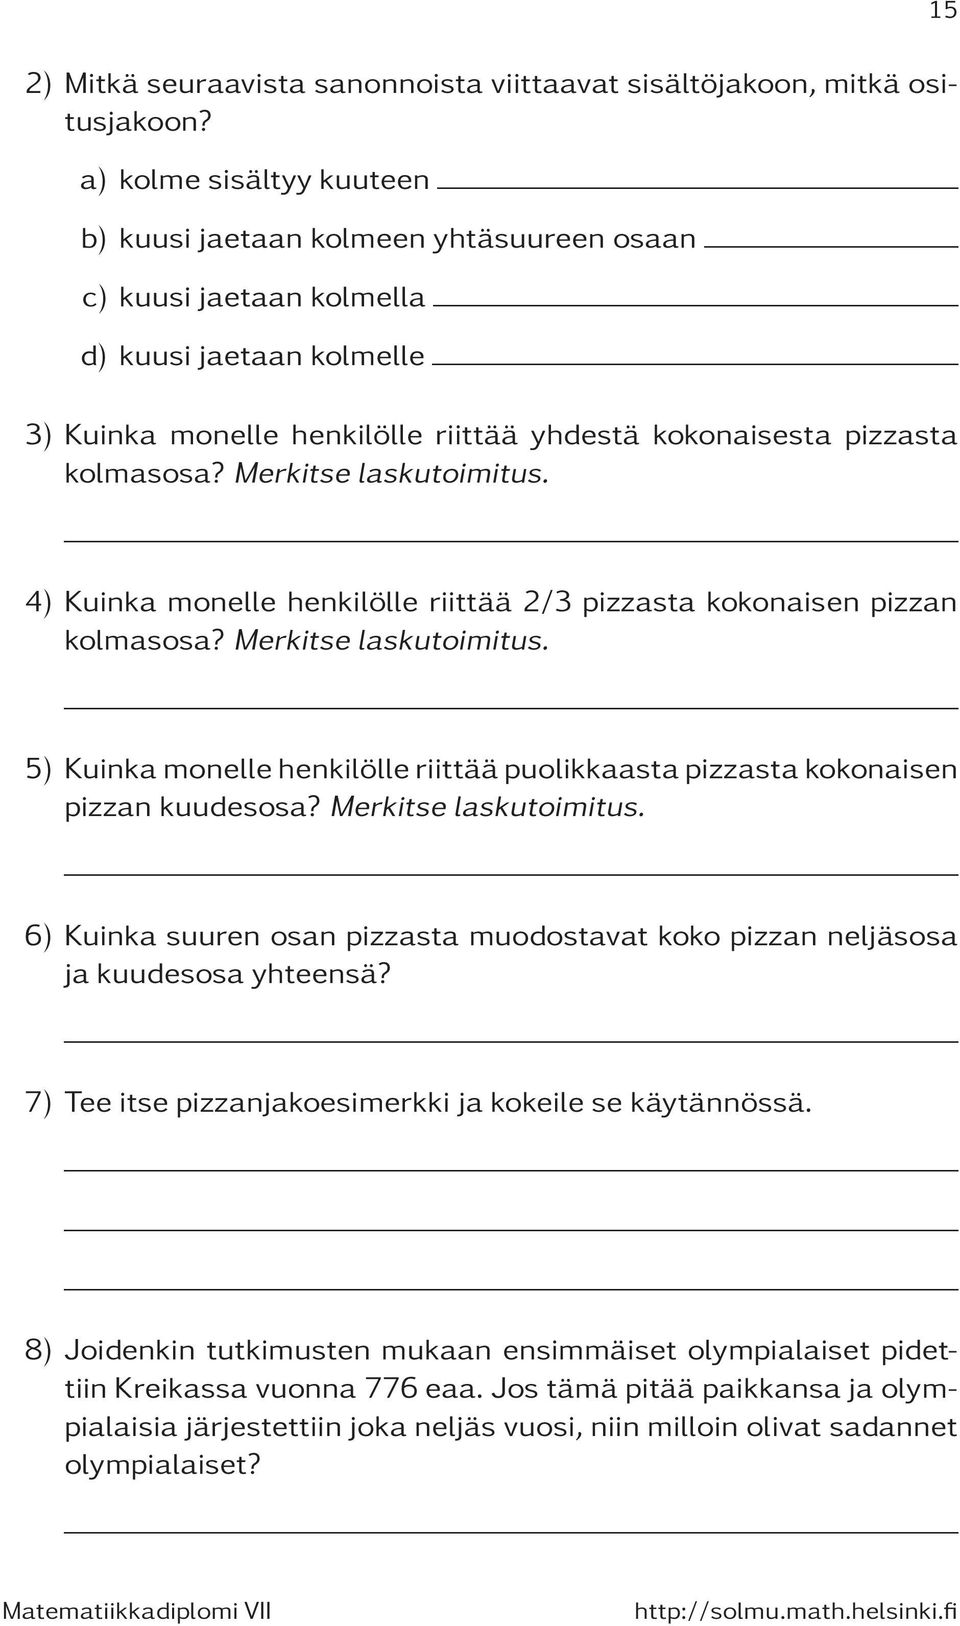 Merkitse laskutoimitus. 15 4) Kuinka monelle henkilölle riittää 2/3 pizzasta kokonaisen pizzan kolmasosa? Merkitse laskutoimitus.